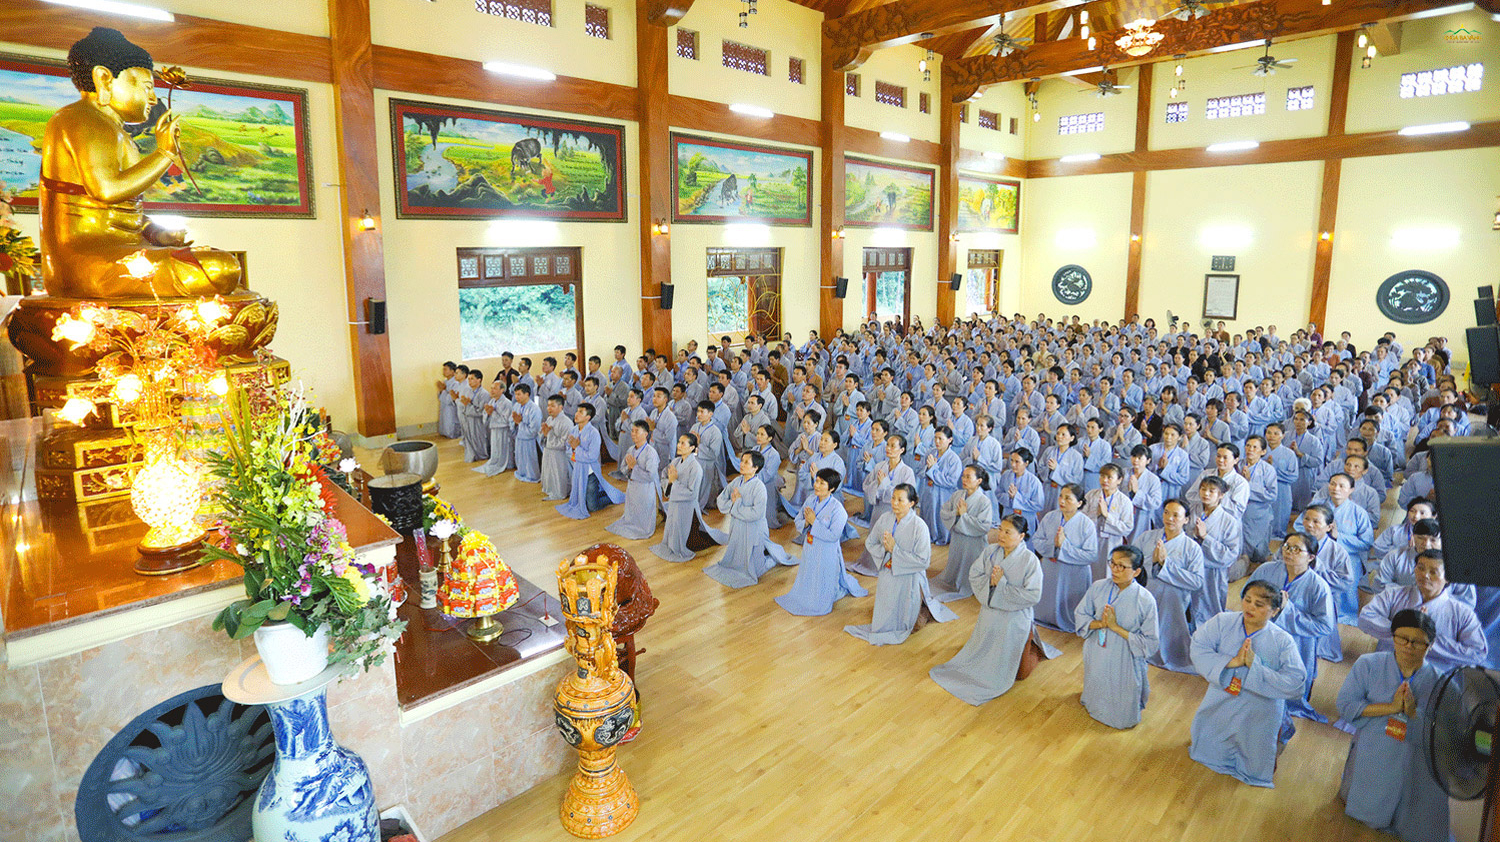 CLB Cúc Vàng - Tập Tu Lục Hòa là môi trường thiện lành giúp các Phật tử rèn luyện, phát triển thân tâm, trở nên hướng thiện hướng thượng